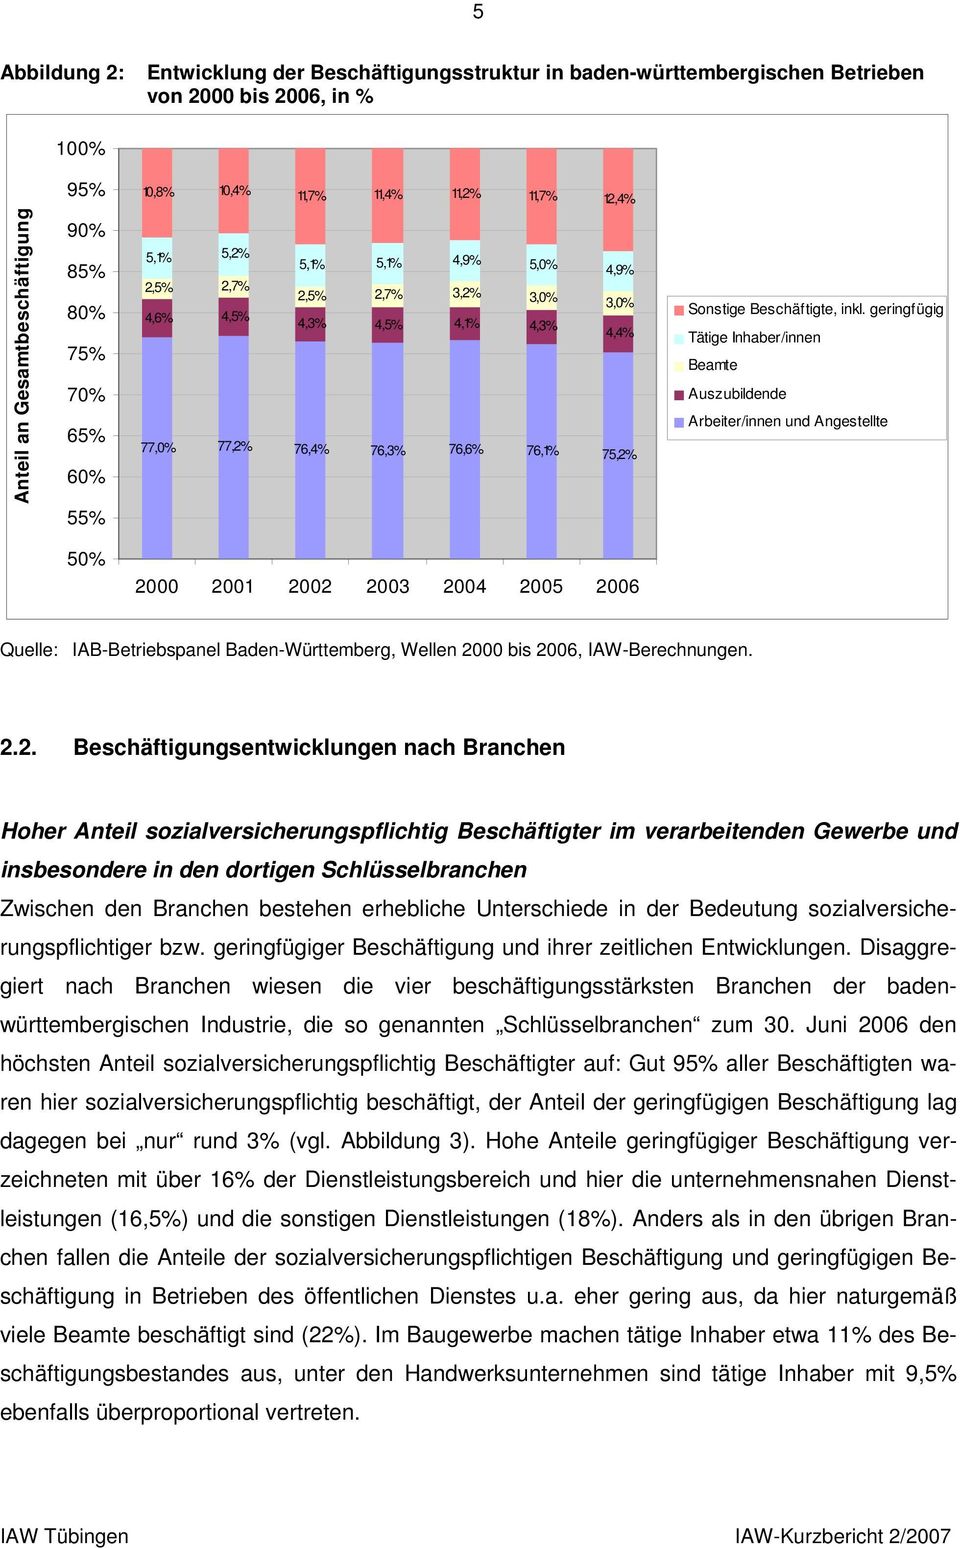 inkl. geringfügig Tätige Inhaber/innen Beamte Auszubildende Arbeiter/innen und Angestellte 50% 2000 2001 2002 2003 2004 2005 2006 Quelle: IAB-Betriebspanel Baden-Württemberg, Wellen 2000 bis 2006,